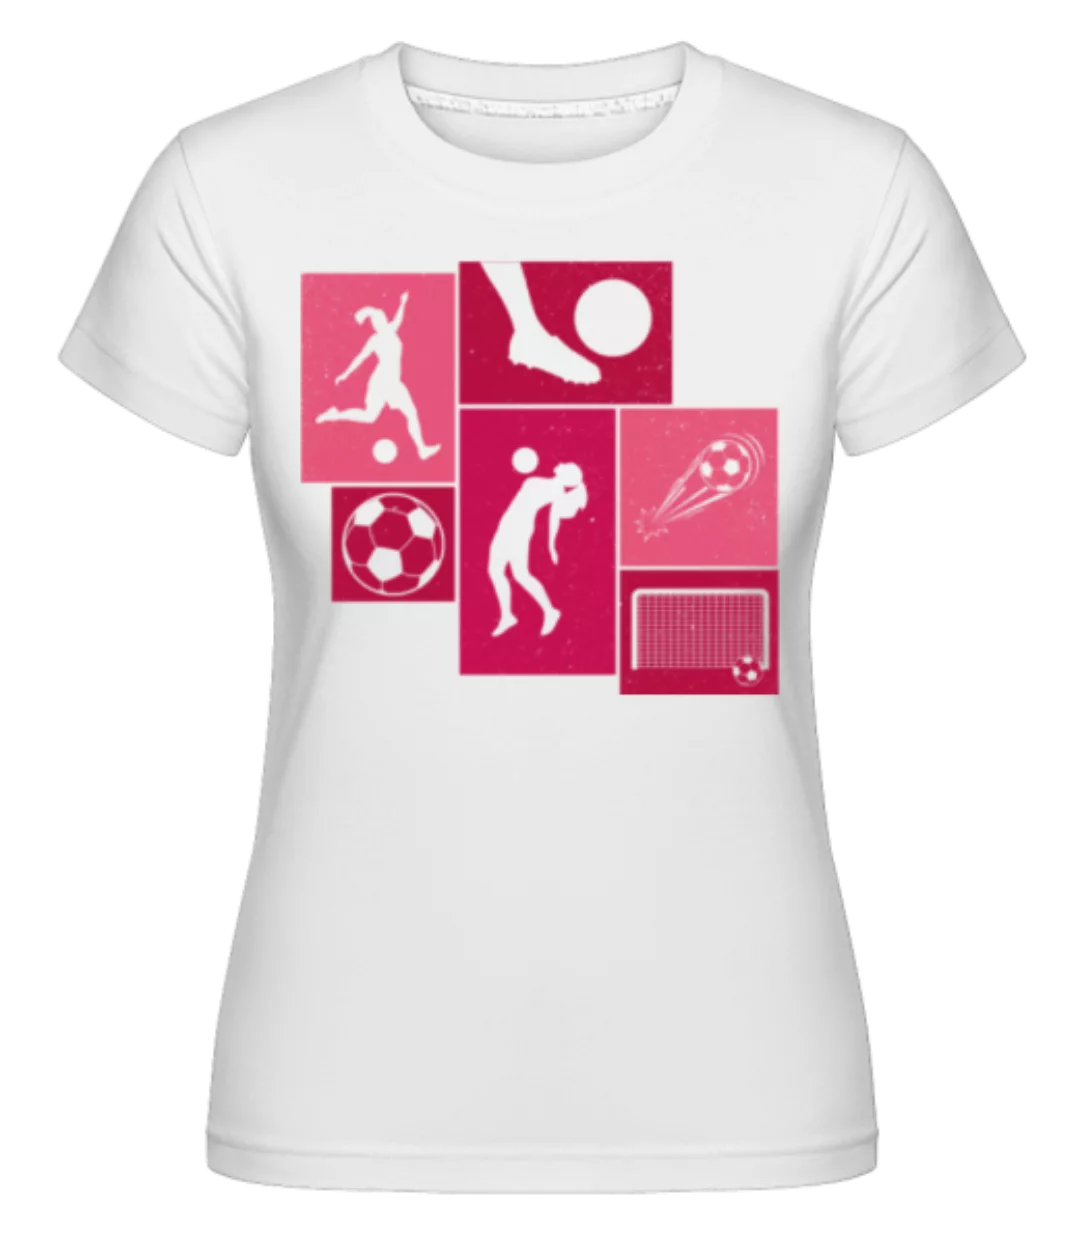 Fußball Collage · Shirtinator Frauen T-Shirt günstig online kaufen